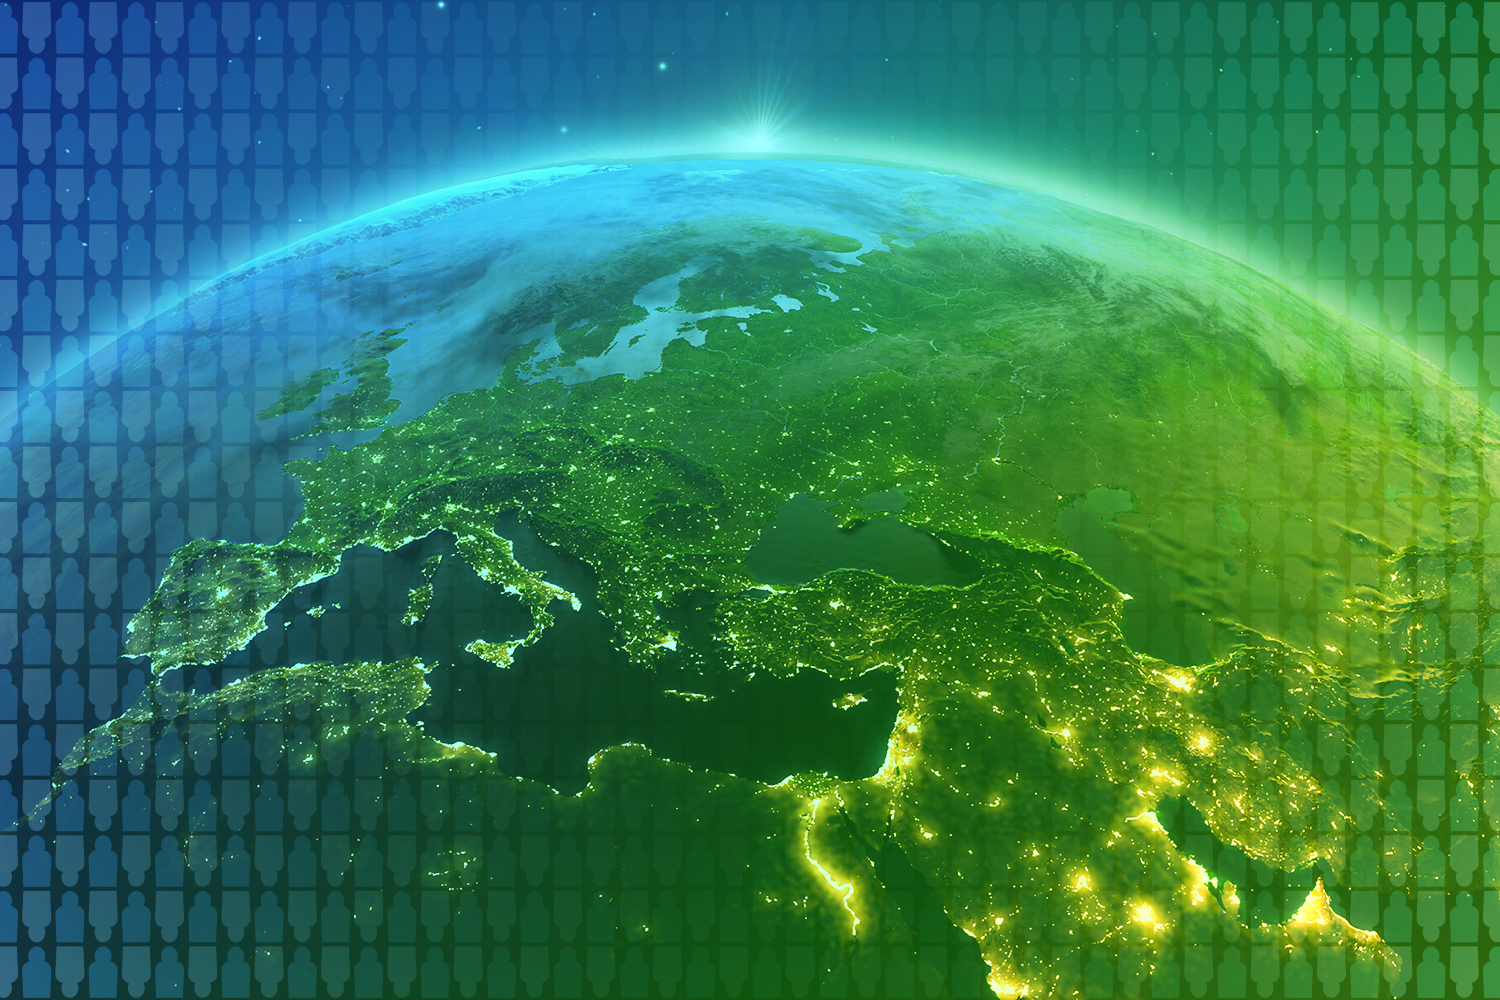 color-treated image of EMEA region of globe